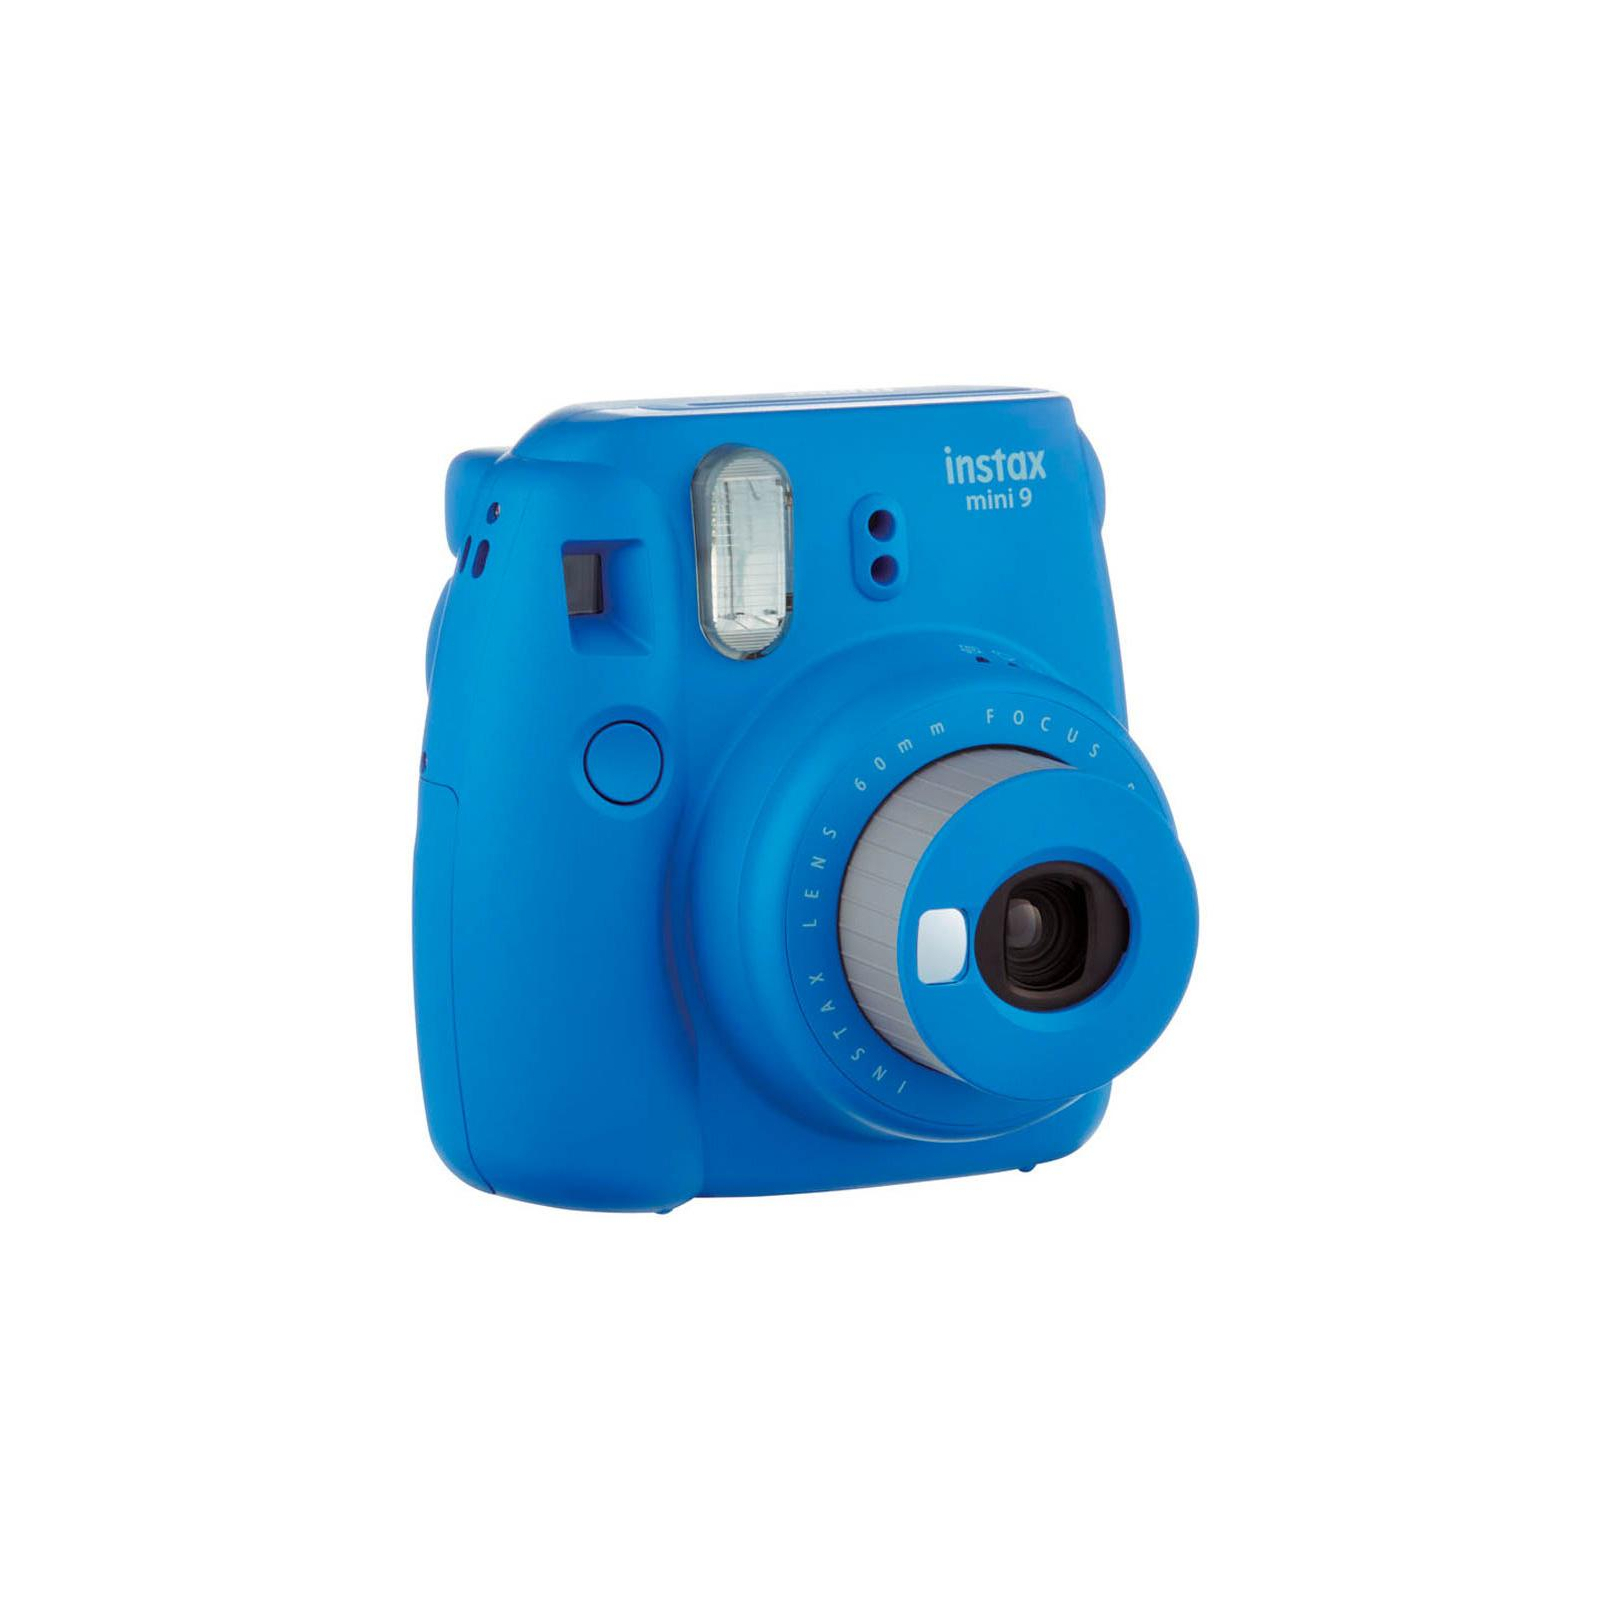 Камера миттєвого друку Fujifilm Instax Mini 9 CAMERA COB BLUE EX D N Синий Кобальт (16550564) зображення 3